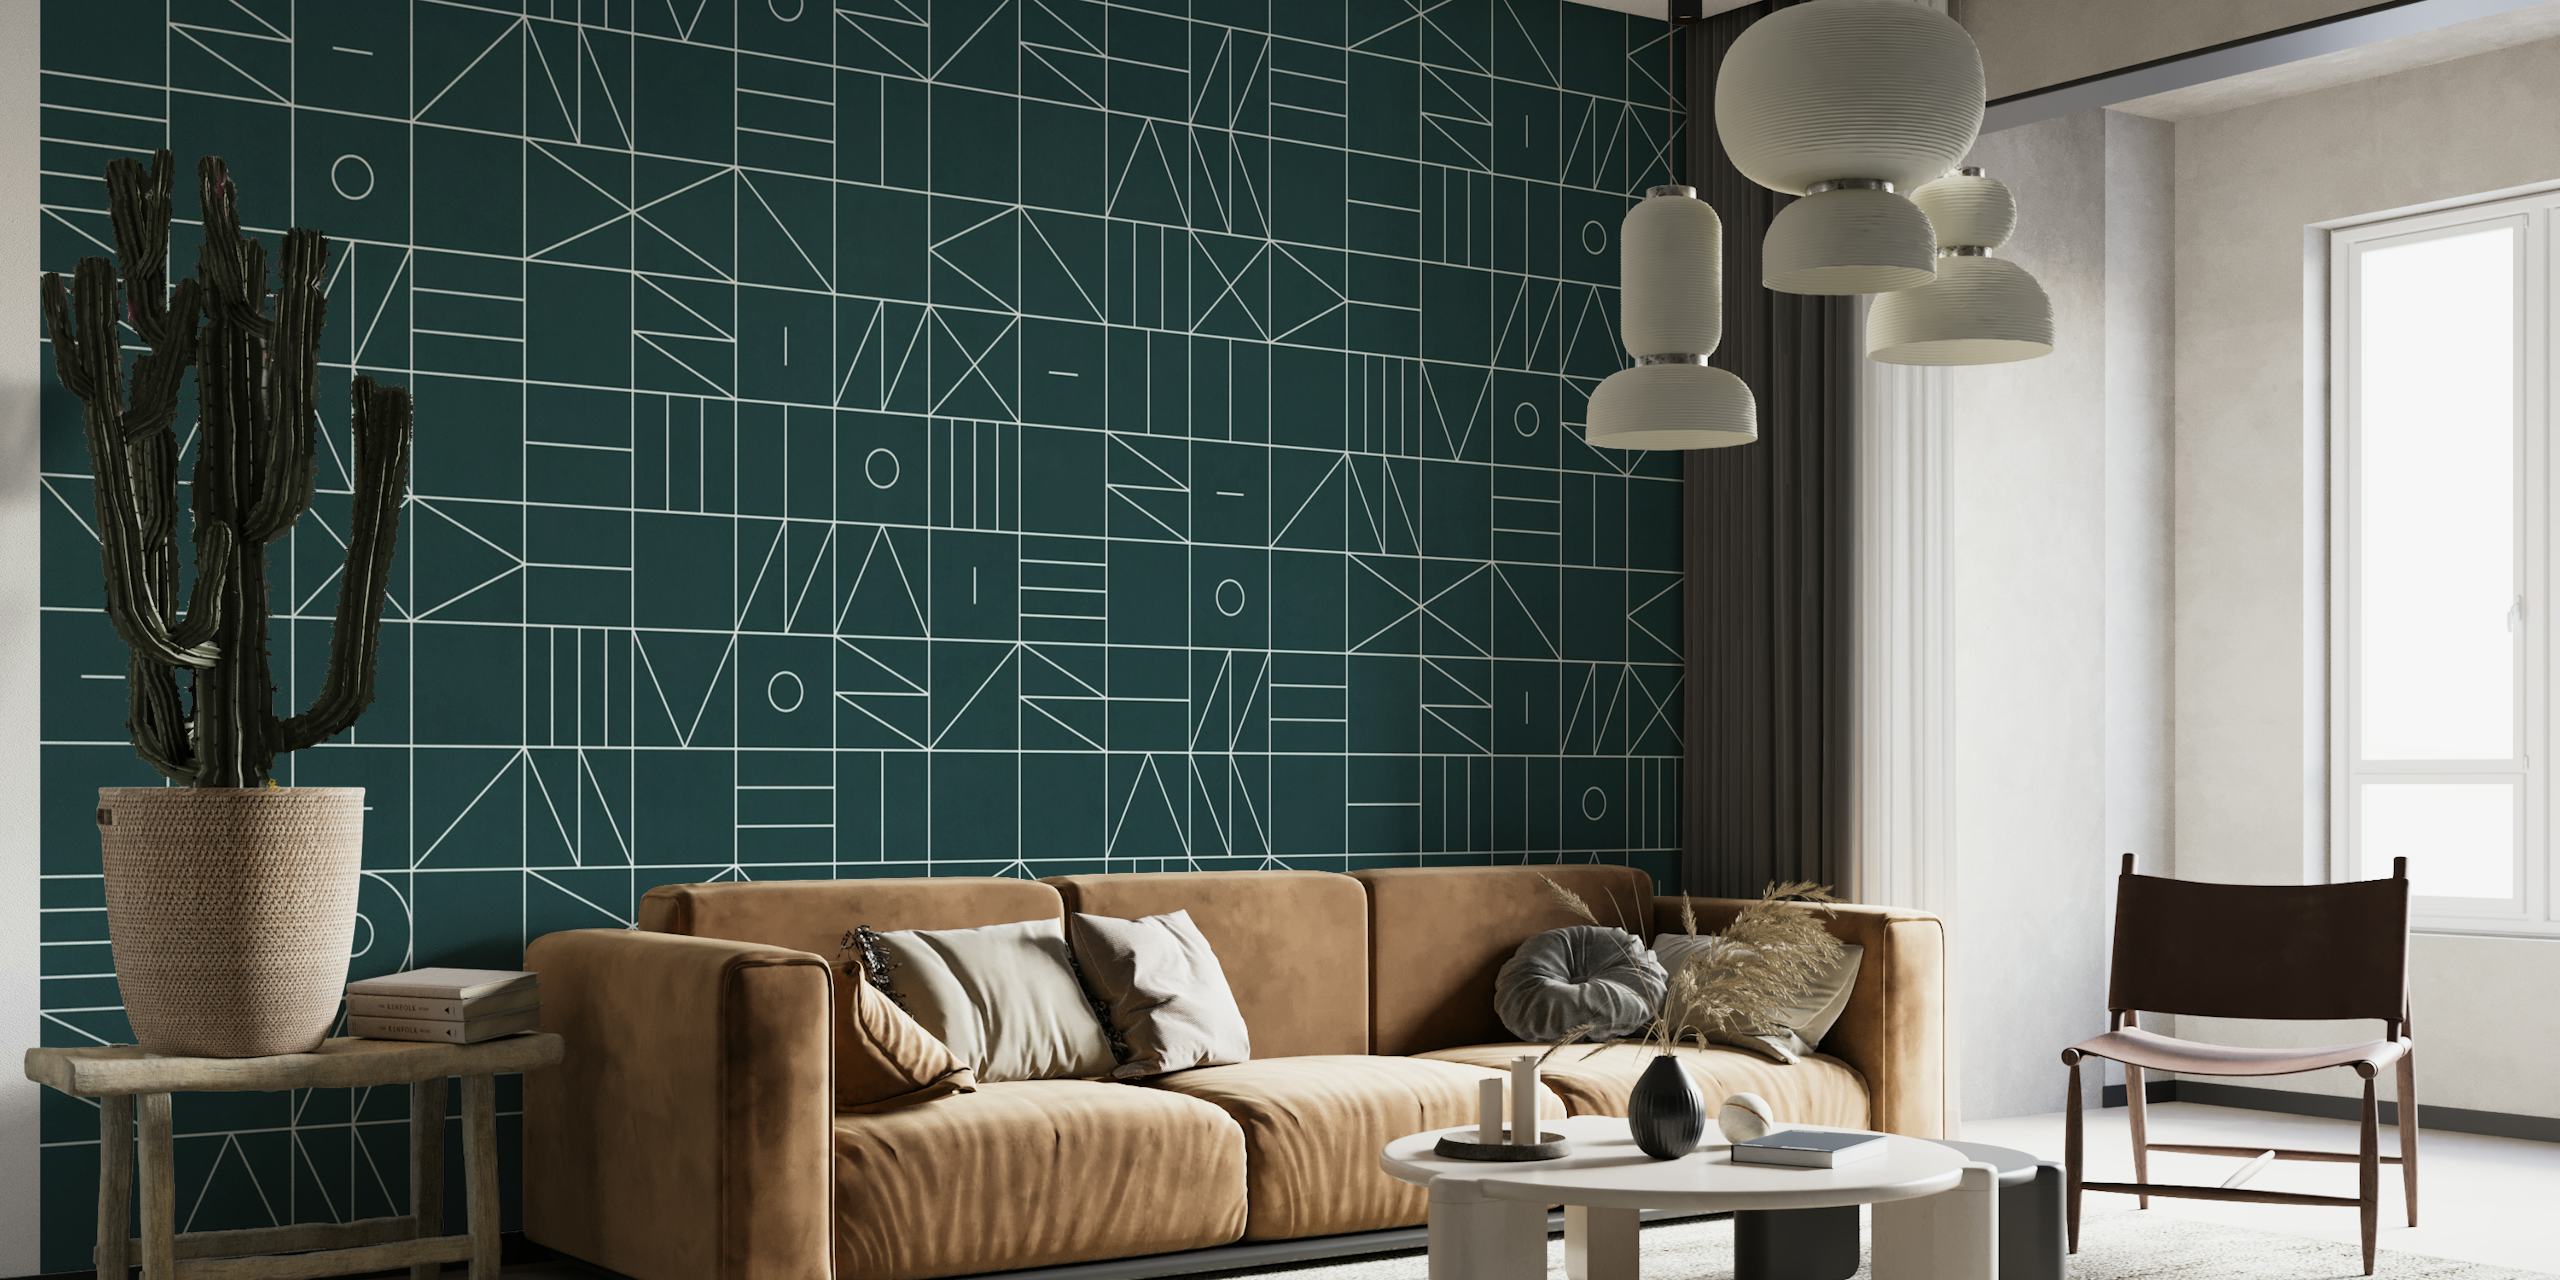 Muurschildering met geometrisch patroon met blauwgroen en wit design